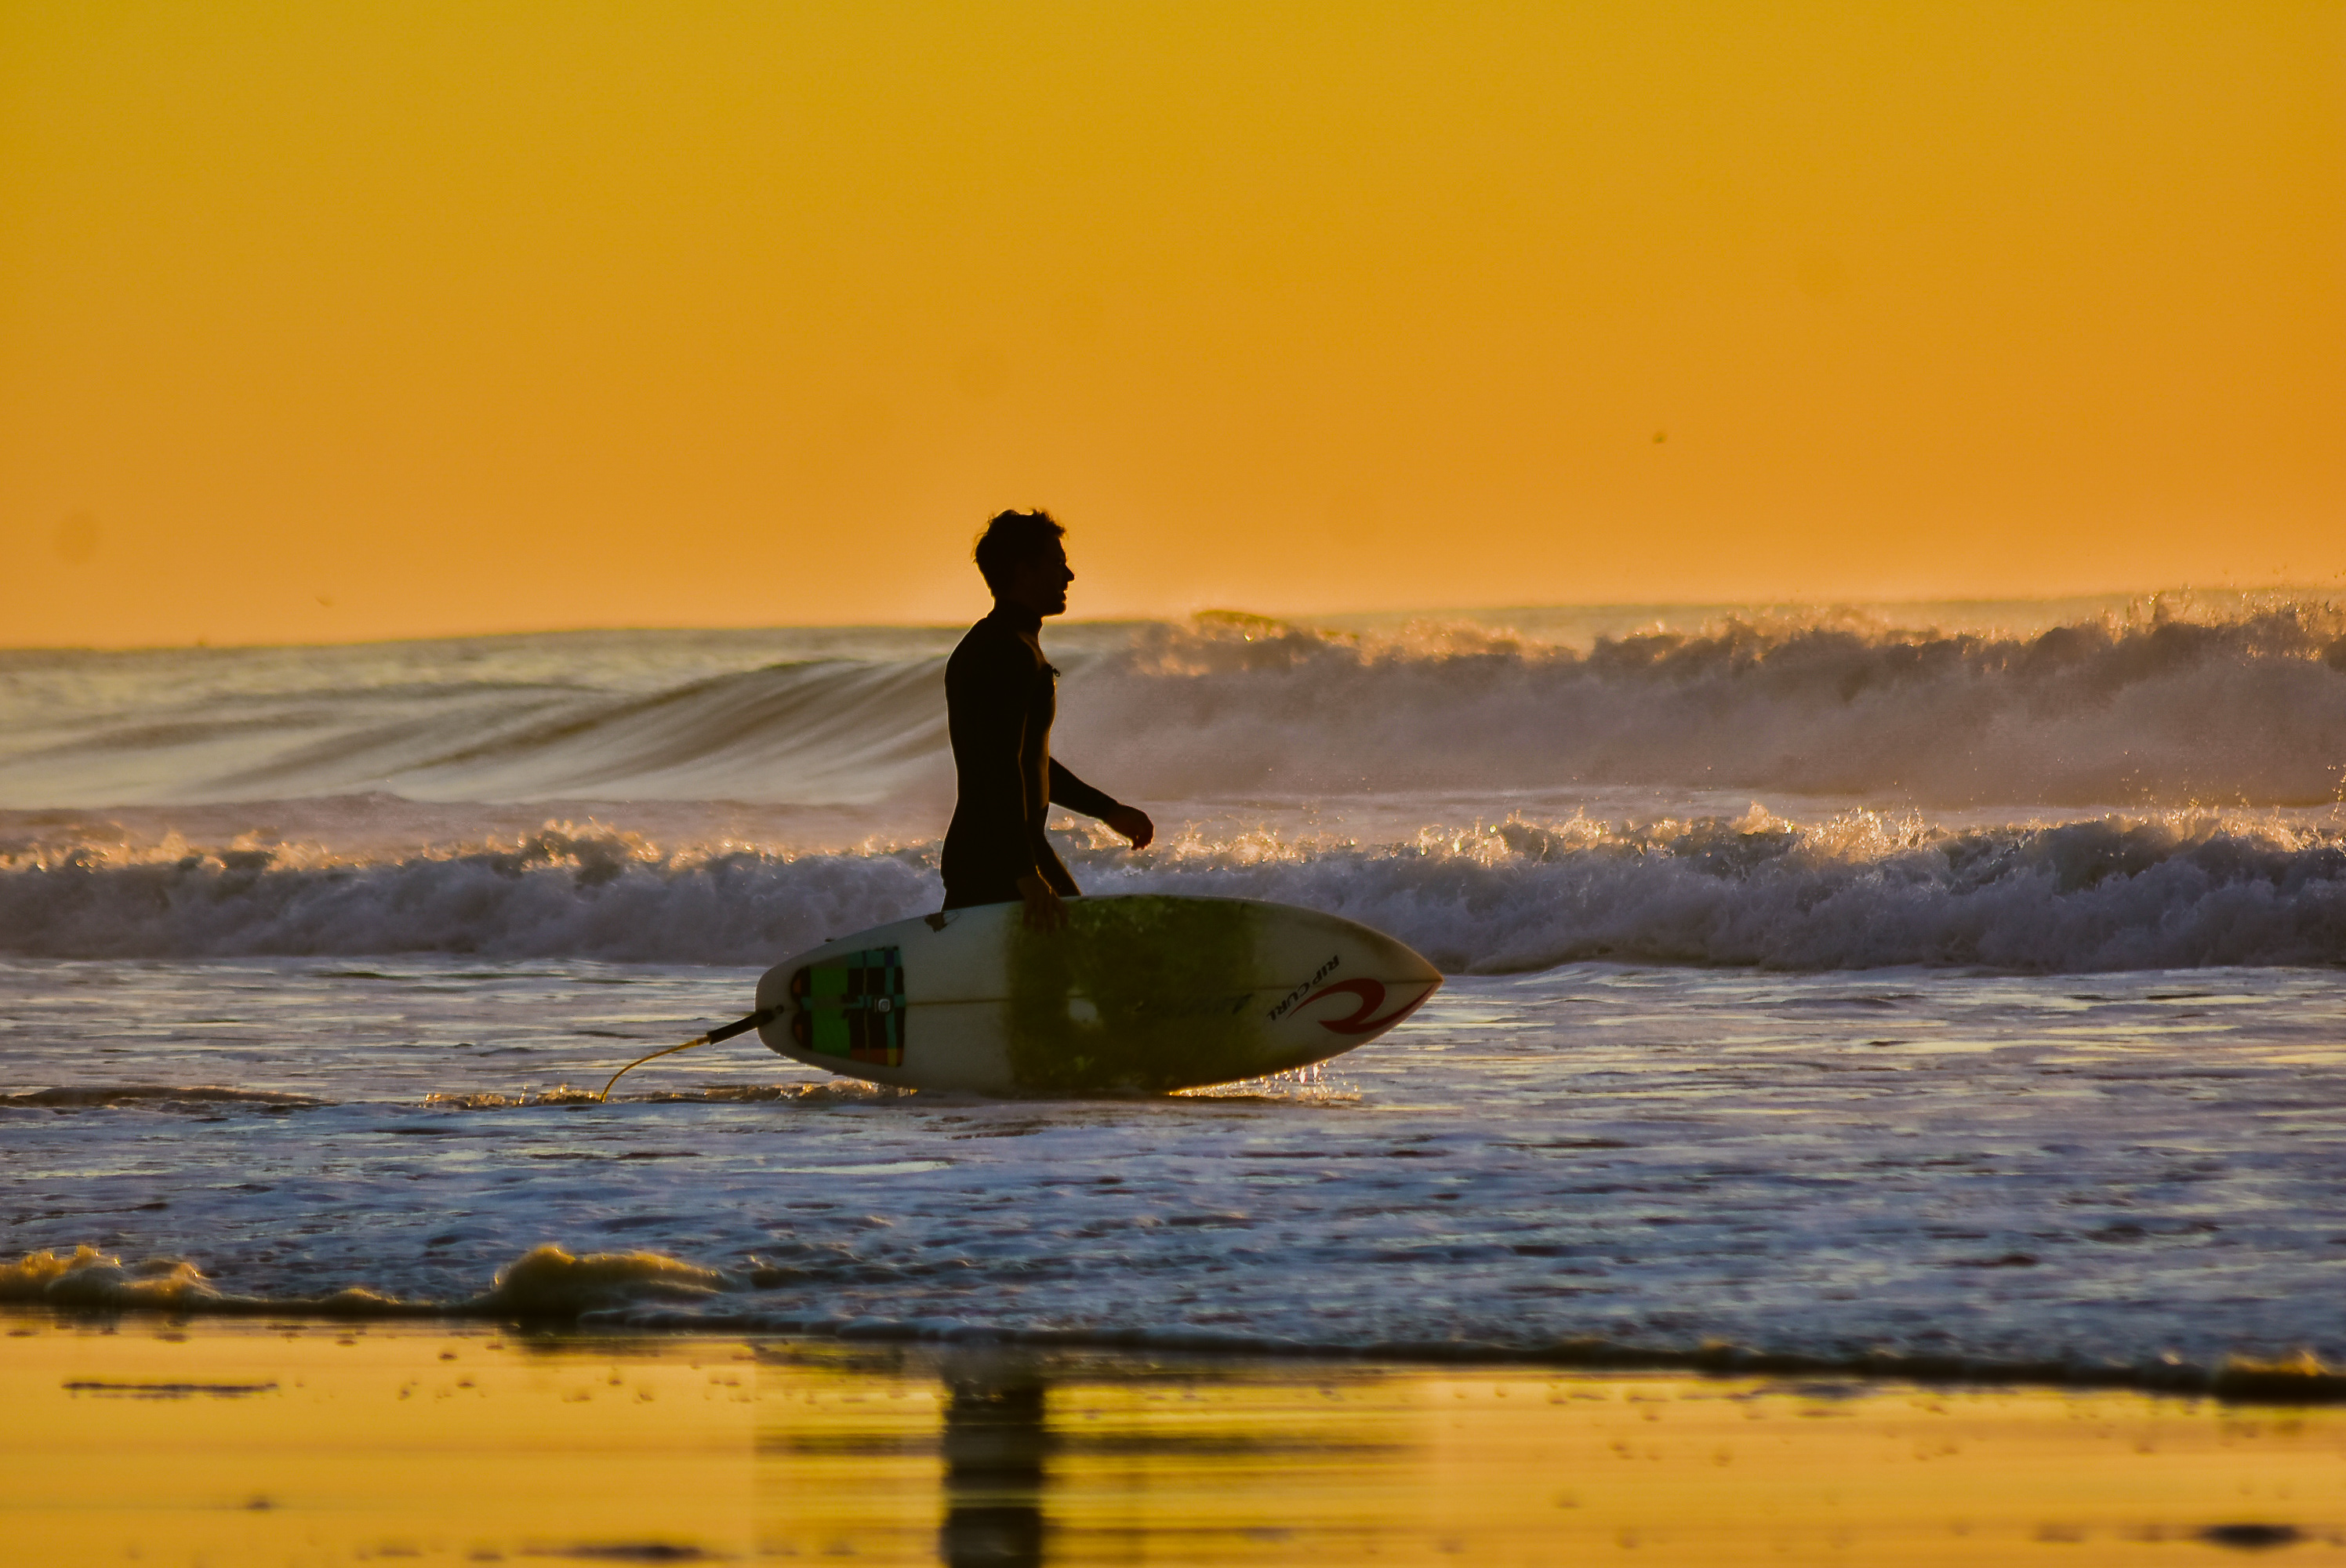 El oleaje de Las Grutas es generalmente calmo y más en verano, pero cuando hay swell o viento sur, que luego cambia a viento norte, se puede hacer surf. Fotos: Agustina Ramírez @minombreesmuycomun.